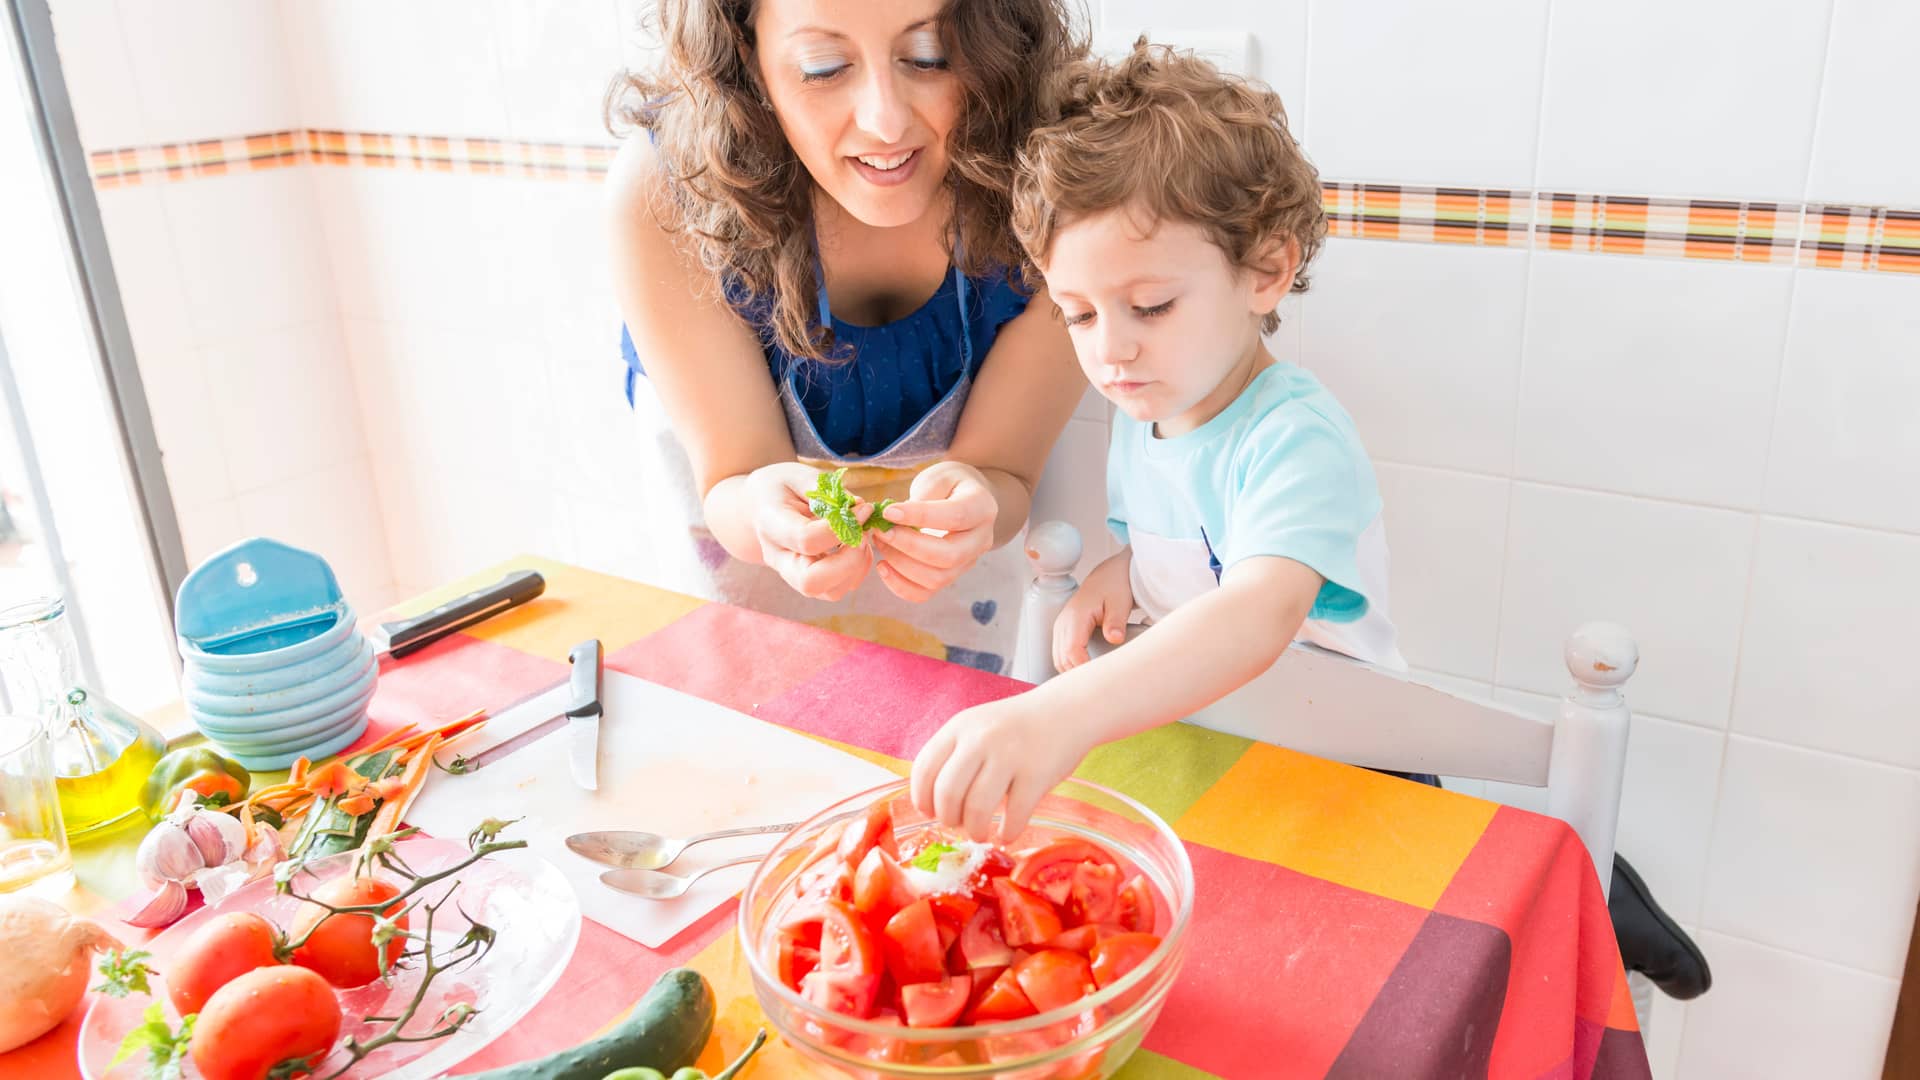 madre cocinando un gazpacho como receta de verano con su hijo en la cocina de casa